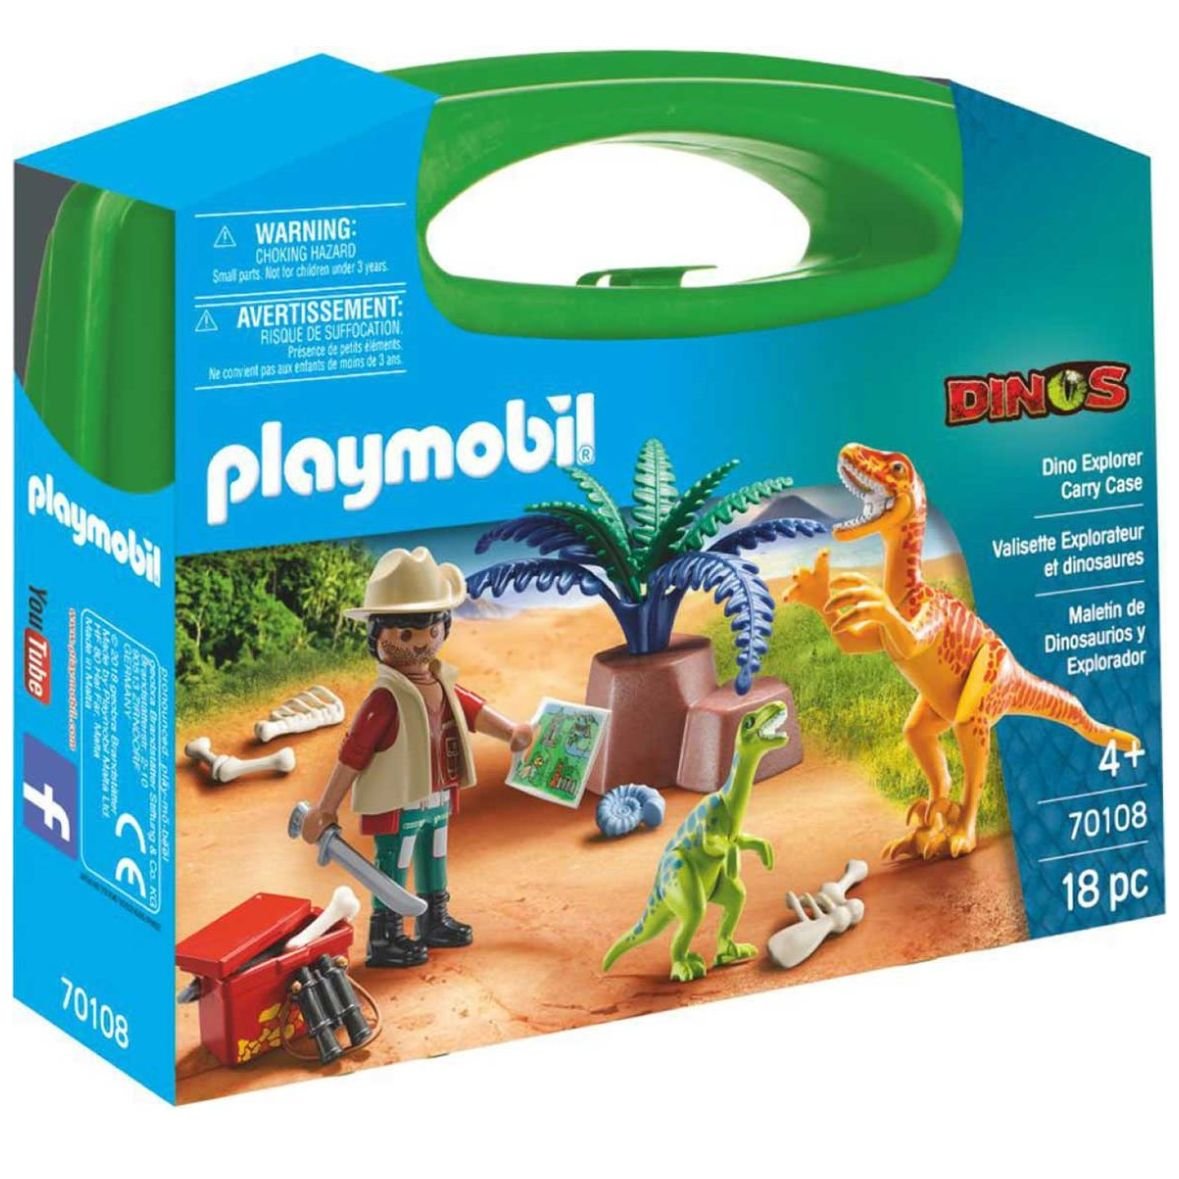 Maletín de Dinosaurios Y Explorador Playmobil